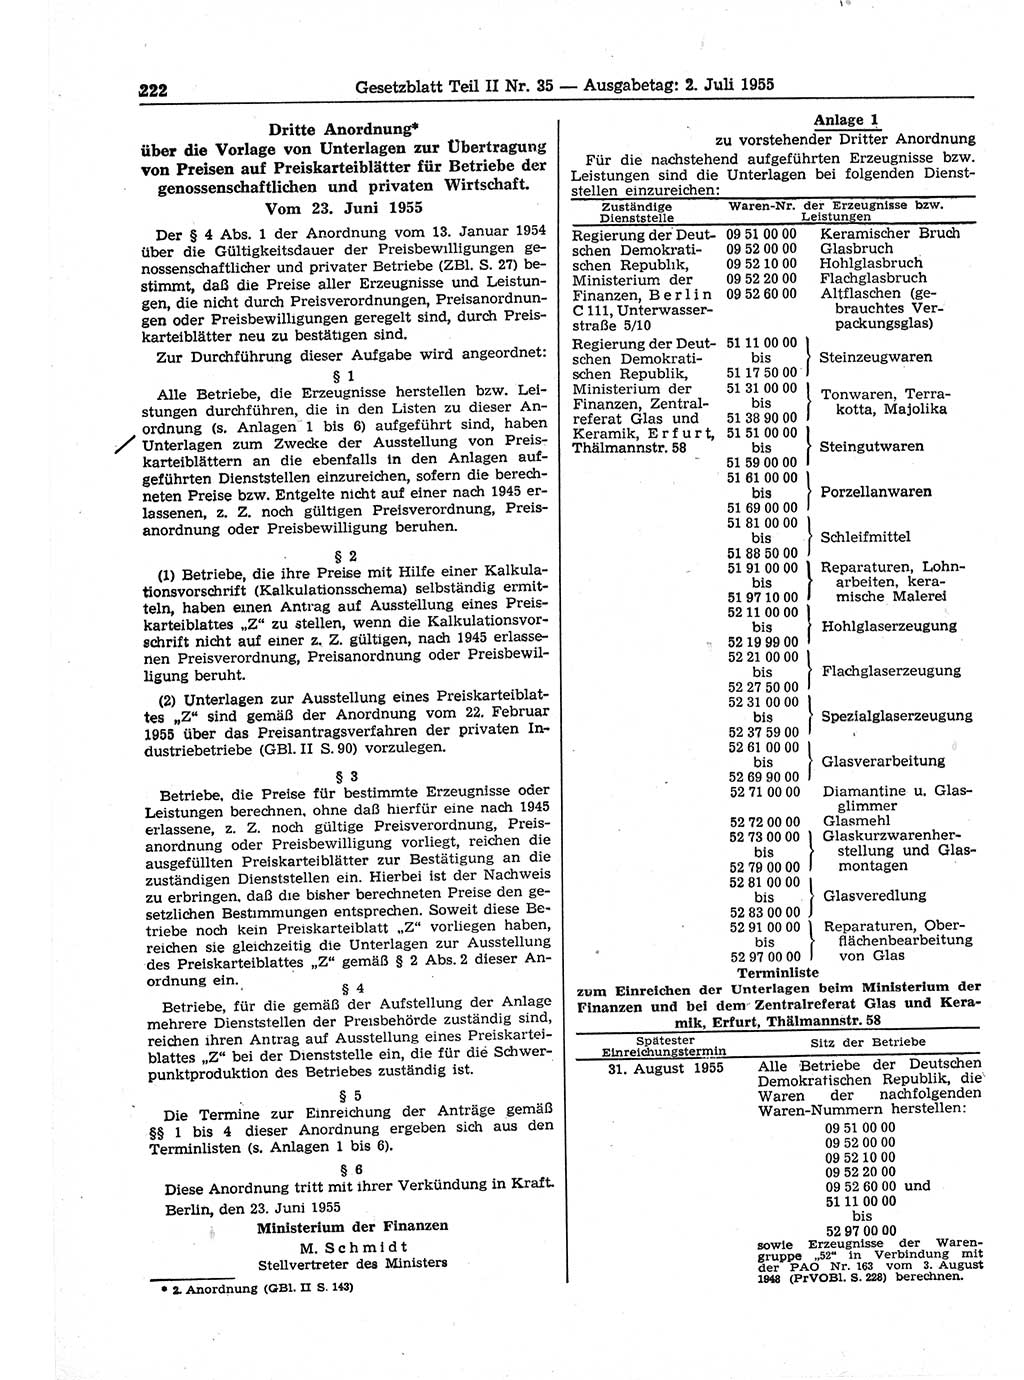 Gesetzblatt (GBl.) der Deutschen Demokratischen Republik (DDR) Teil ⅠⅠ 1955, Seite 222 (GBl. DDR ⅠⅠ 1955, S. 222)